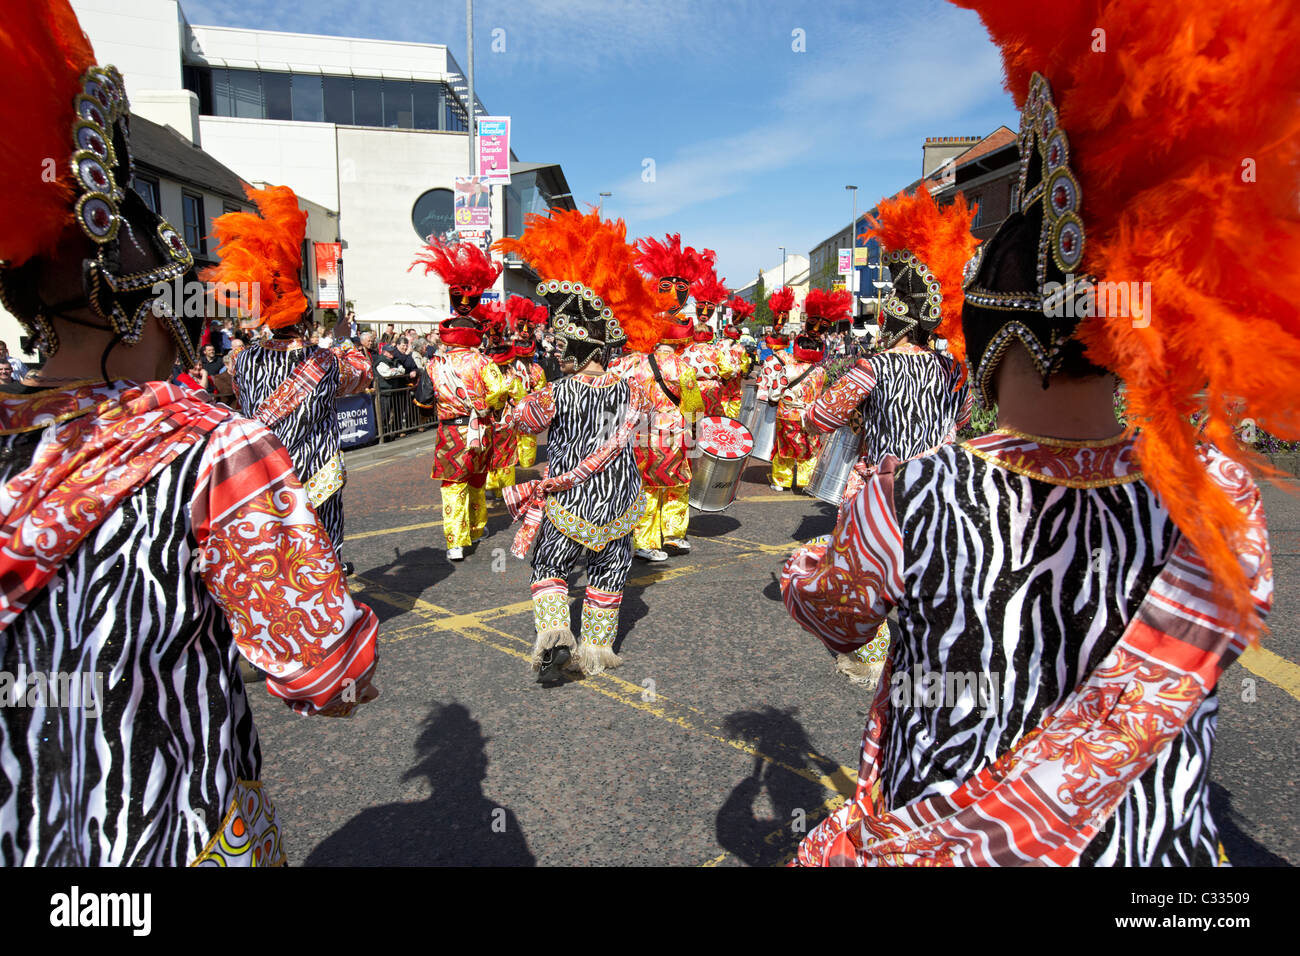 maSamba Samba school band from Dublin perform in a parade in bangor uk Stock Photo